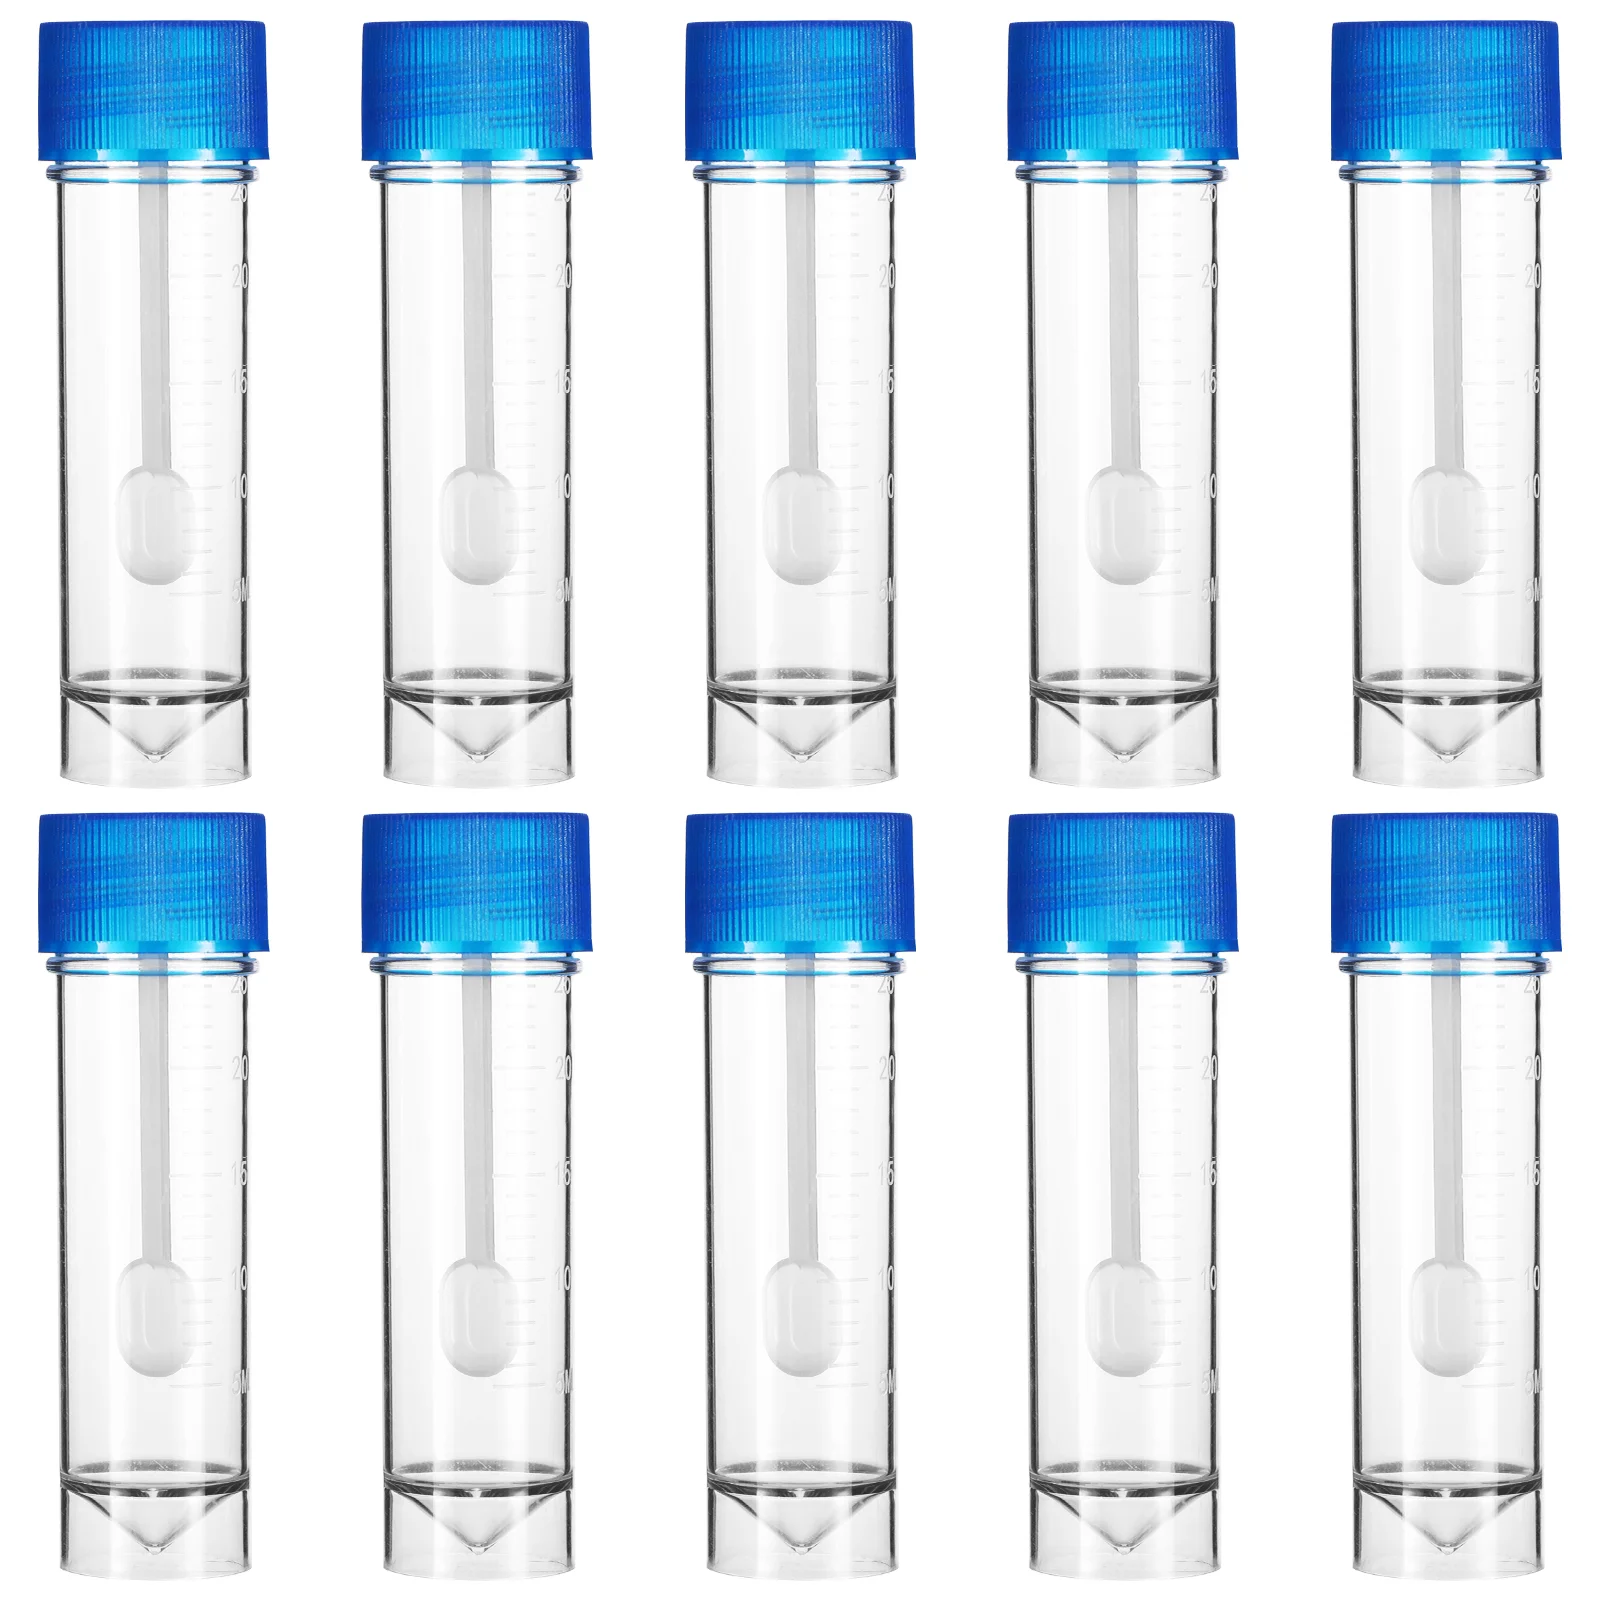 

Стаканы для образцов, пластиковые стаканы для образцов, одноразовые стаканы для сбора образцов, стаканы для образцов для одноразовых измерений (25-30 мл)